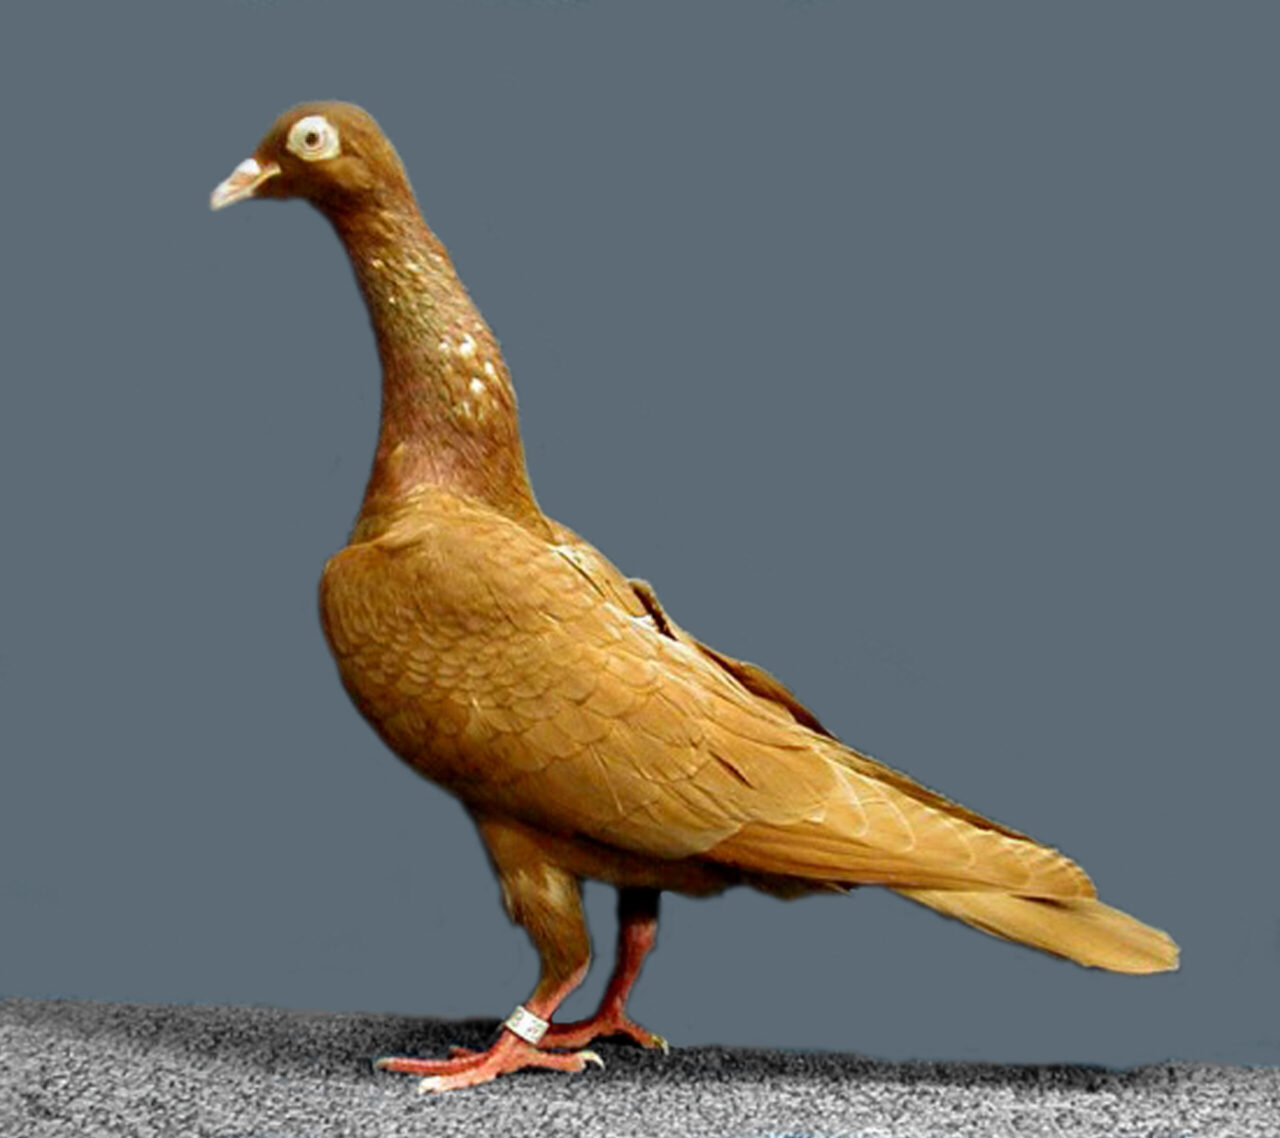 Stargard Shaker Pigeon: характеристики, использование и информация о породе